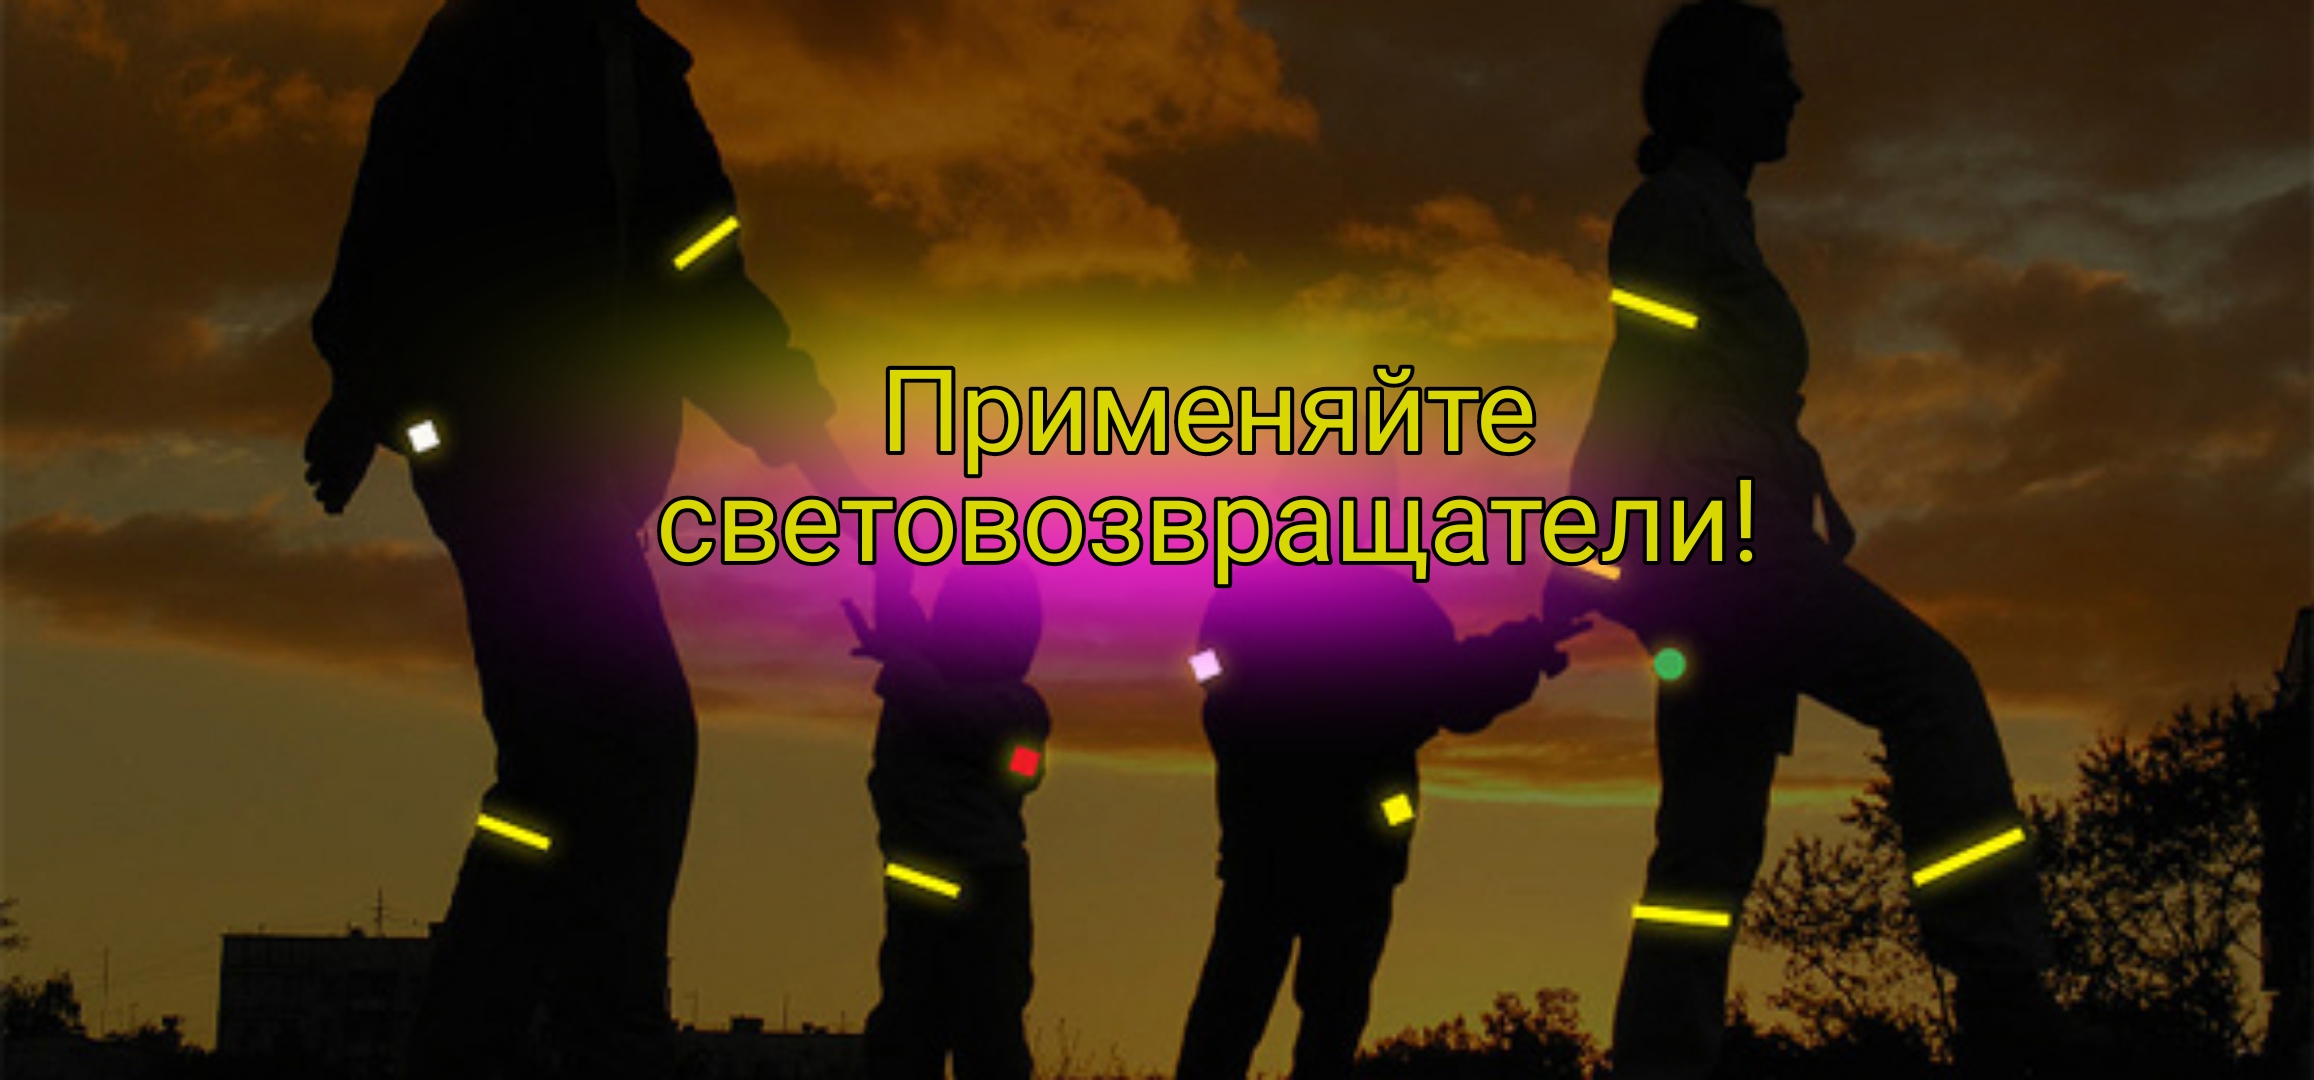 ОГИБДД МО МВД России «Рубцовский» напоминает пешеходам о необходимости использовать световозвращатели в темное время суток.